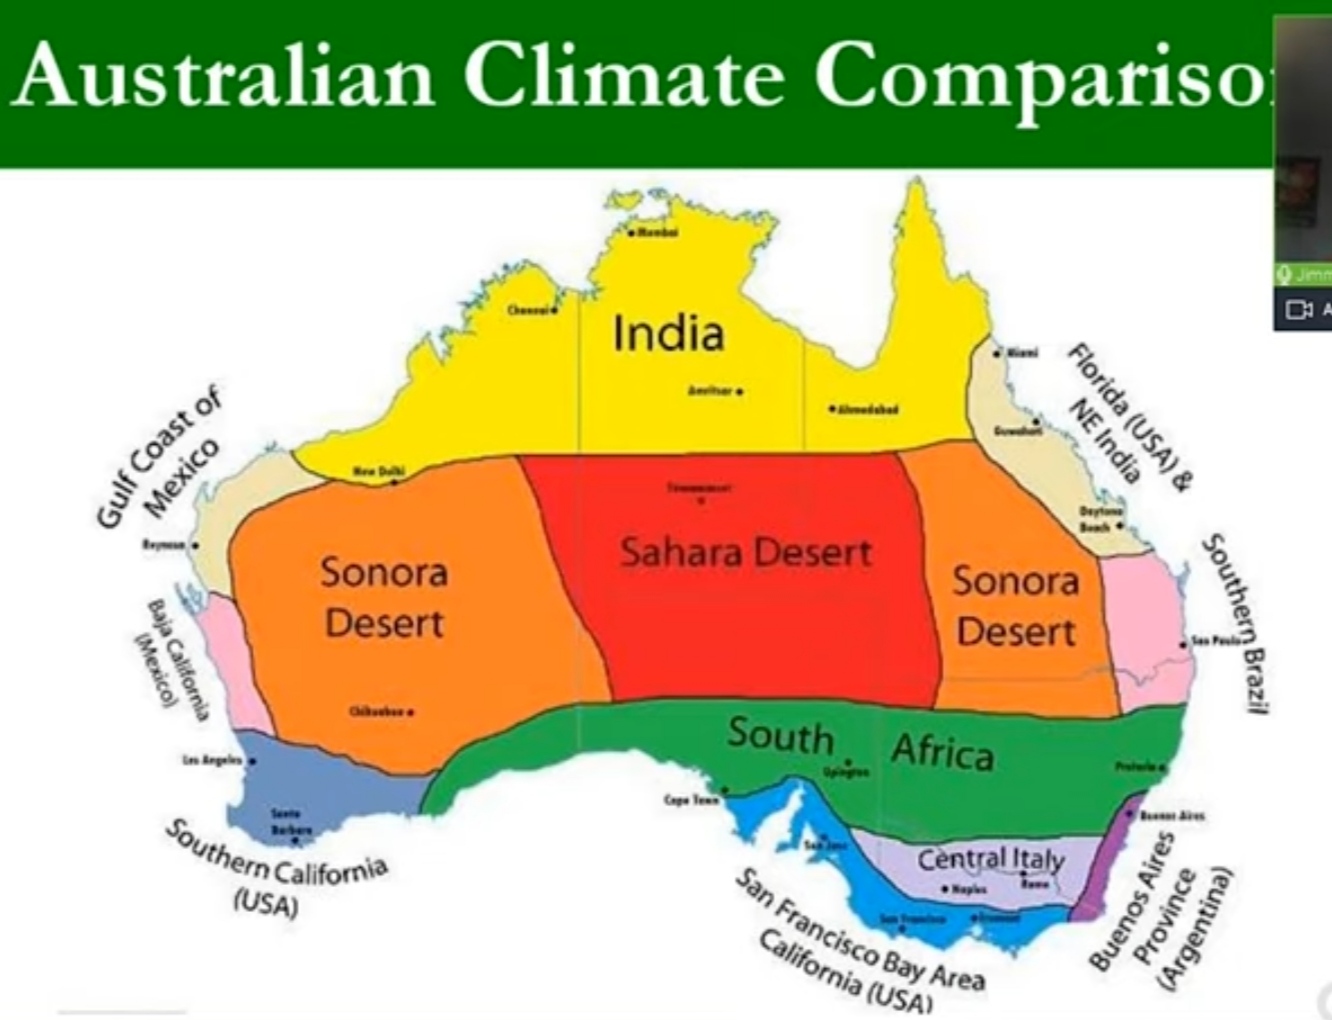 carte - comparaison climat australien avec reste du monde.jpg